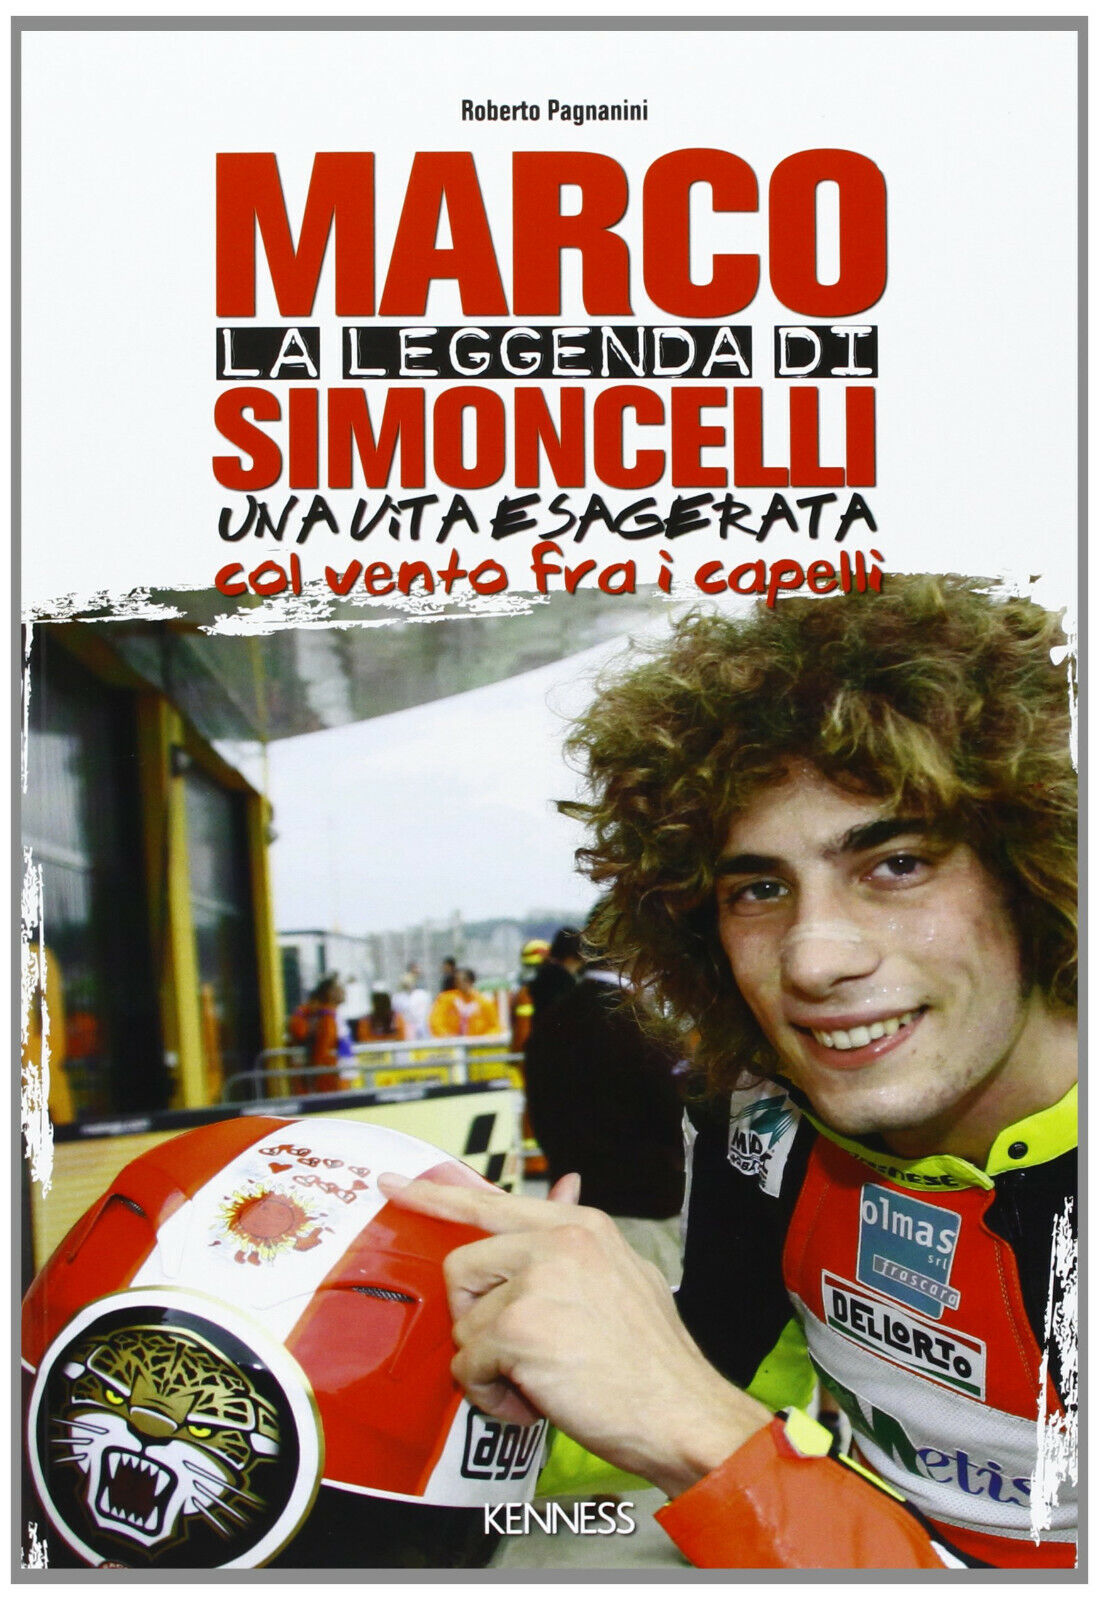 La leggenda di Marco Simoncelli. Una vita esagerata col vento fra i capelli-2013